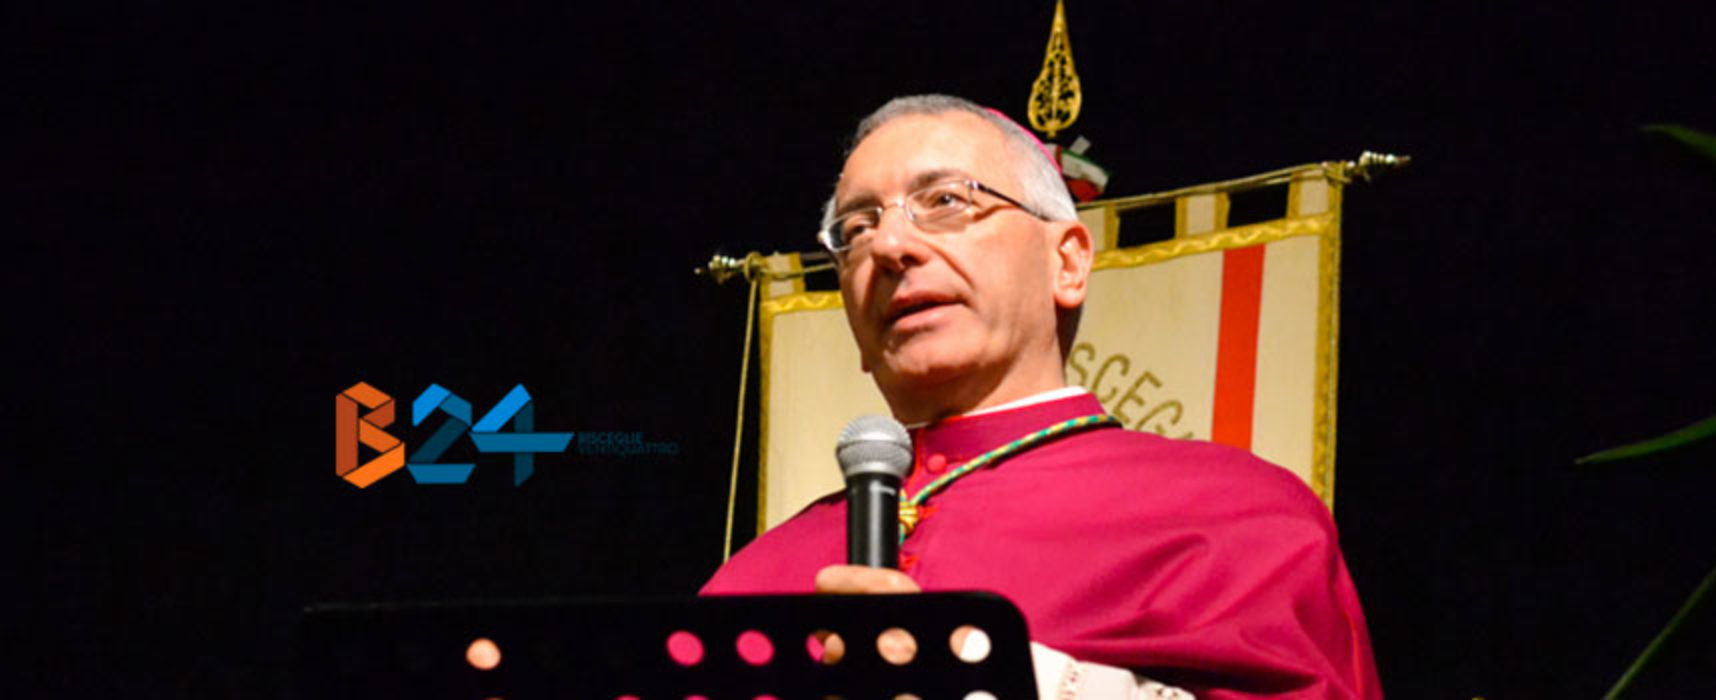 L’Arcivescovo D’Ascenzo incontra le associazioni del terzo settore di Bisceglie